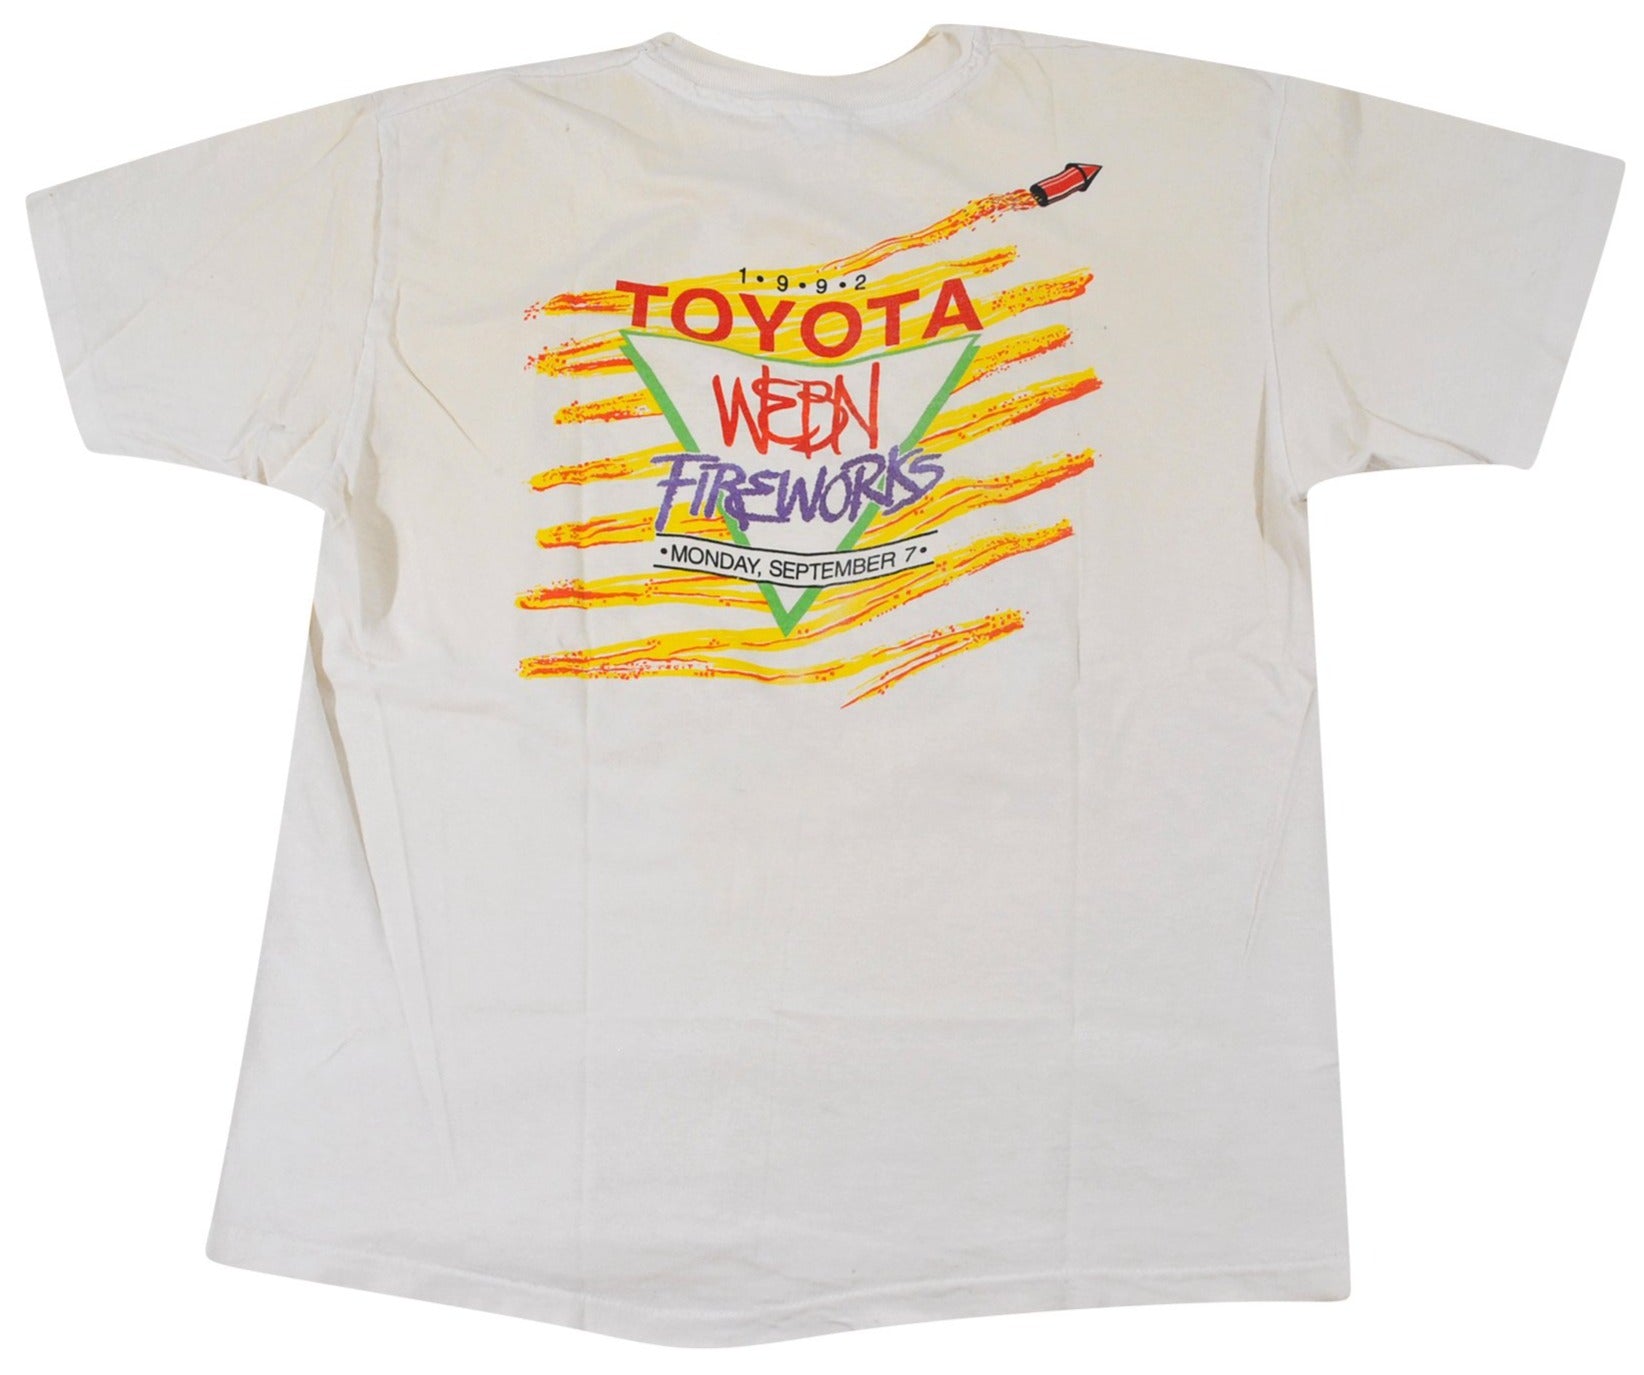 Vintage WEBN Fireworks 1992 Toyota Shirt Size Medium – Yesterday's 